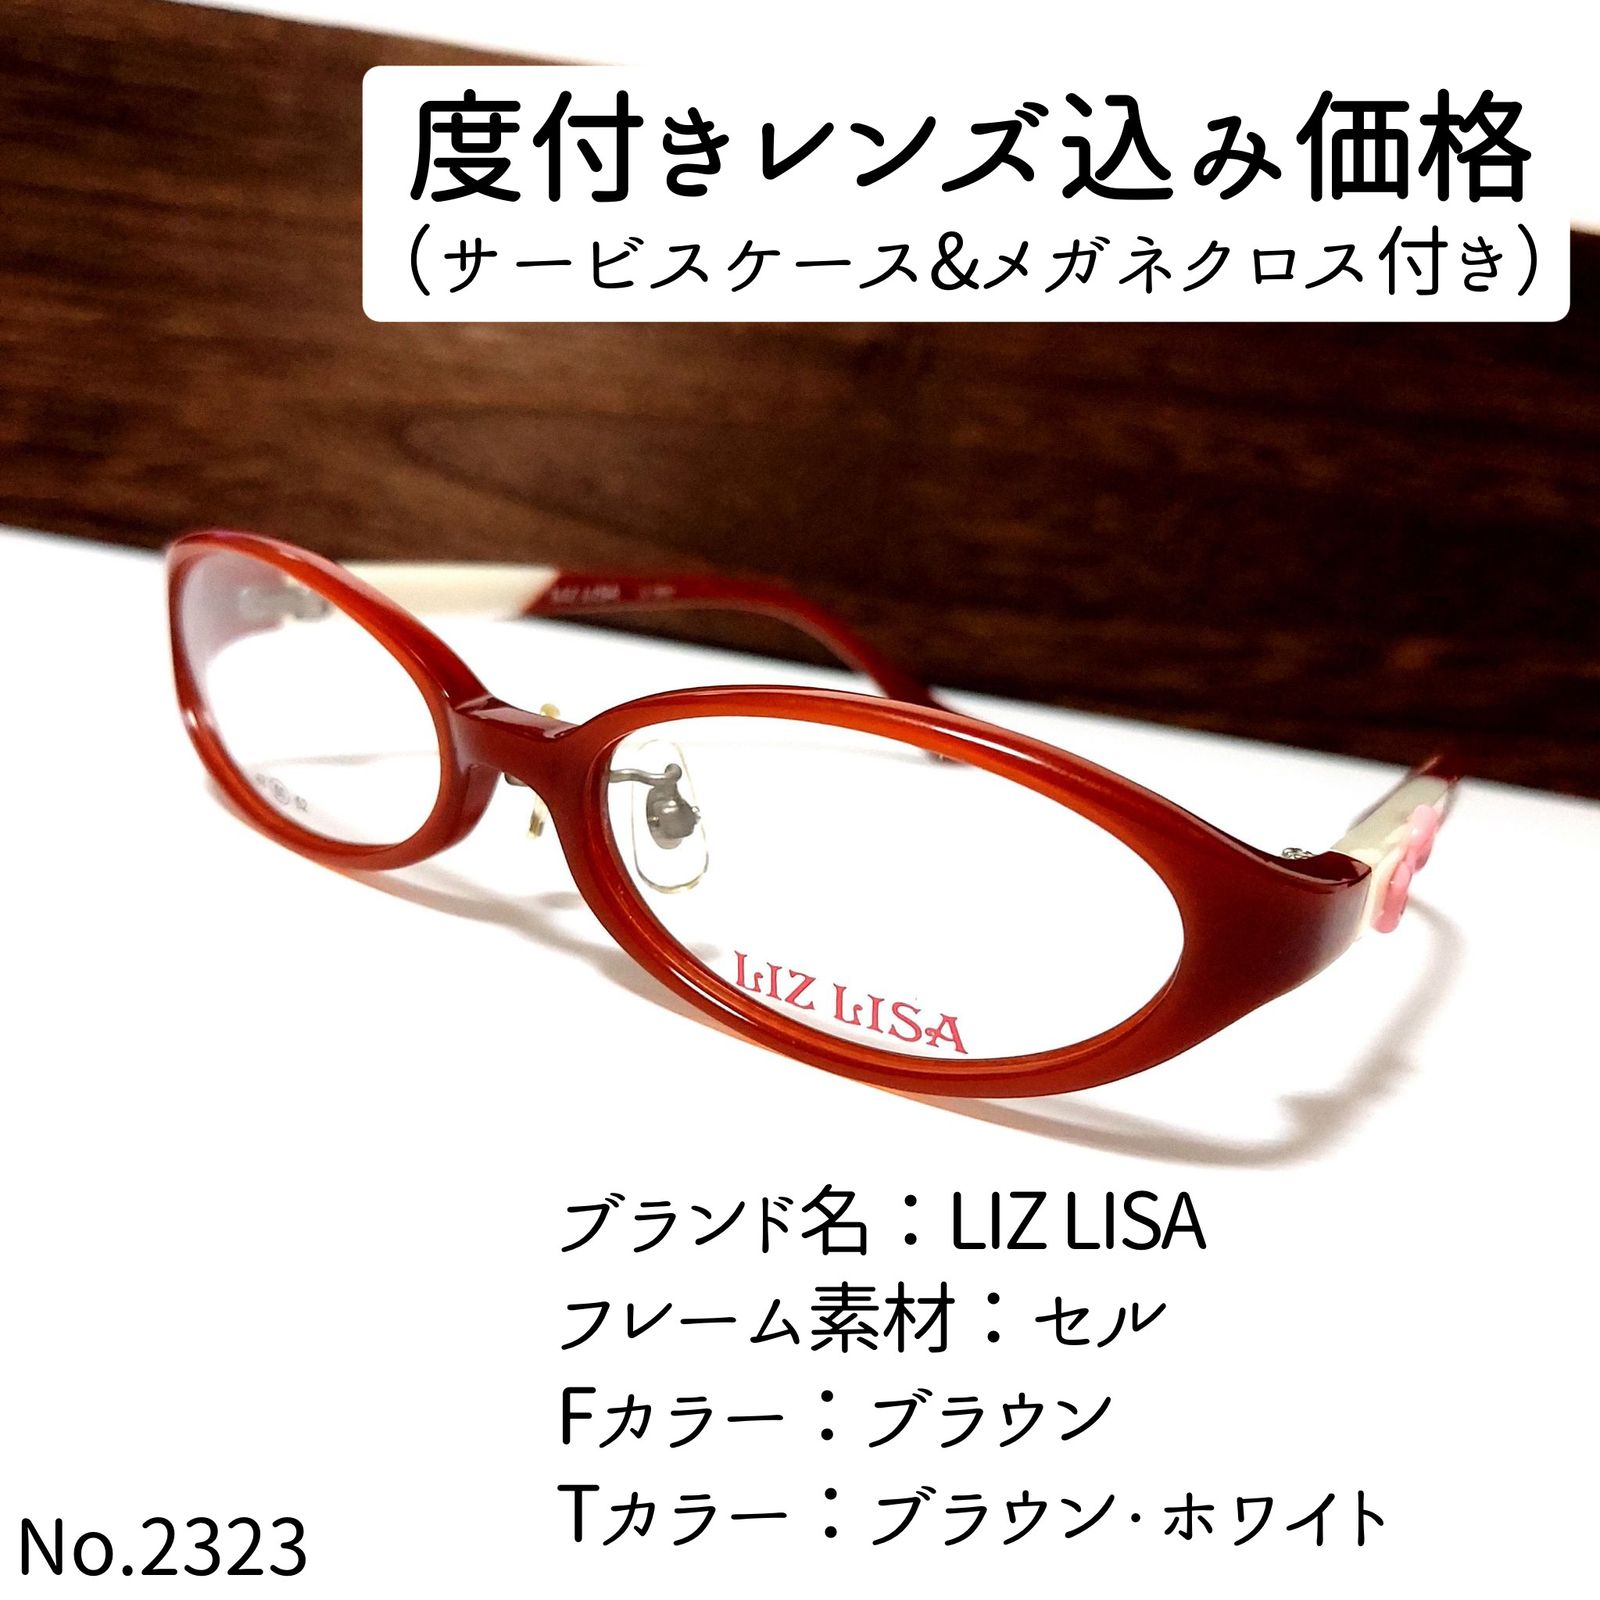 No.2323メガネ LIZ LISA【度数入り込み価格】 - サングラス/メガネ